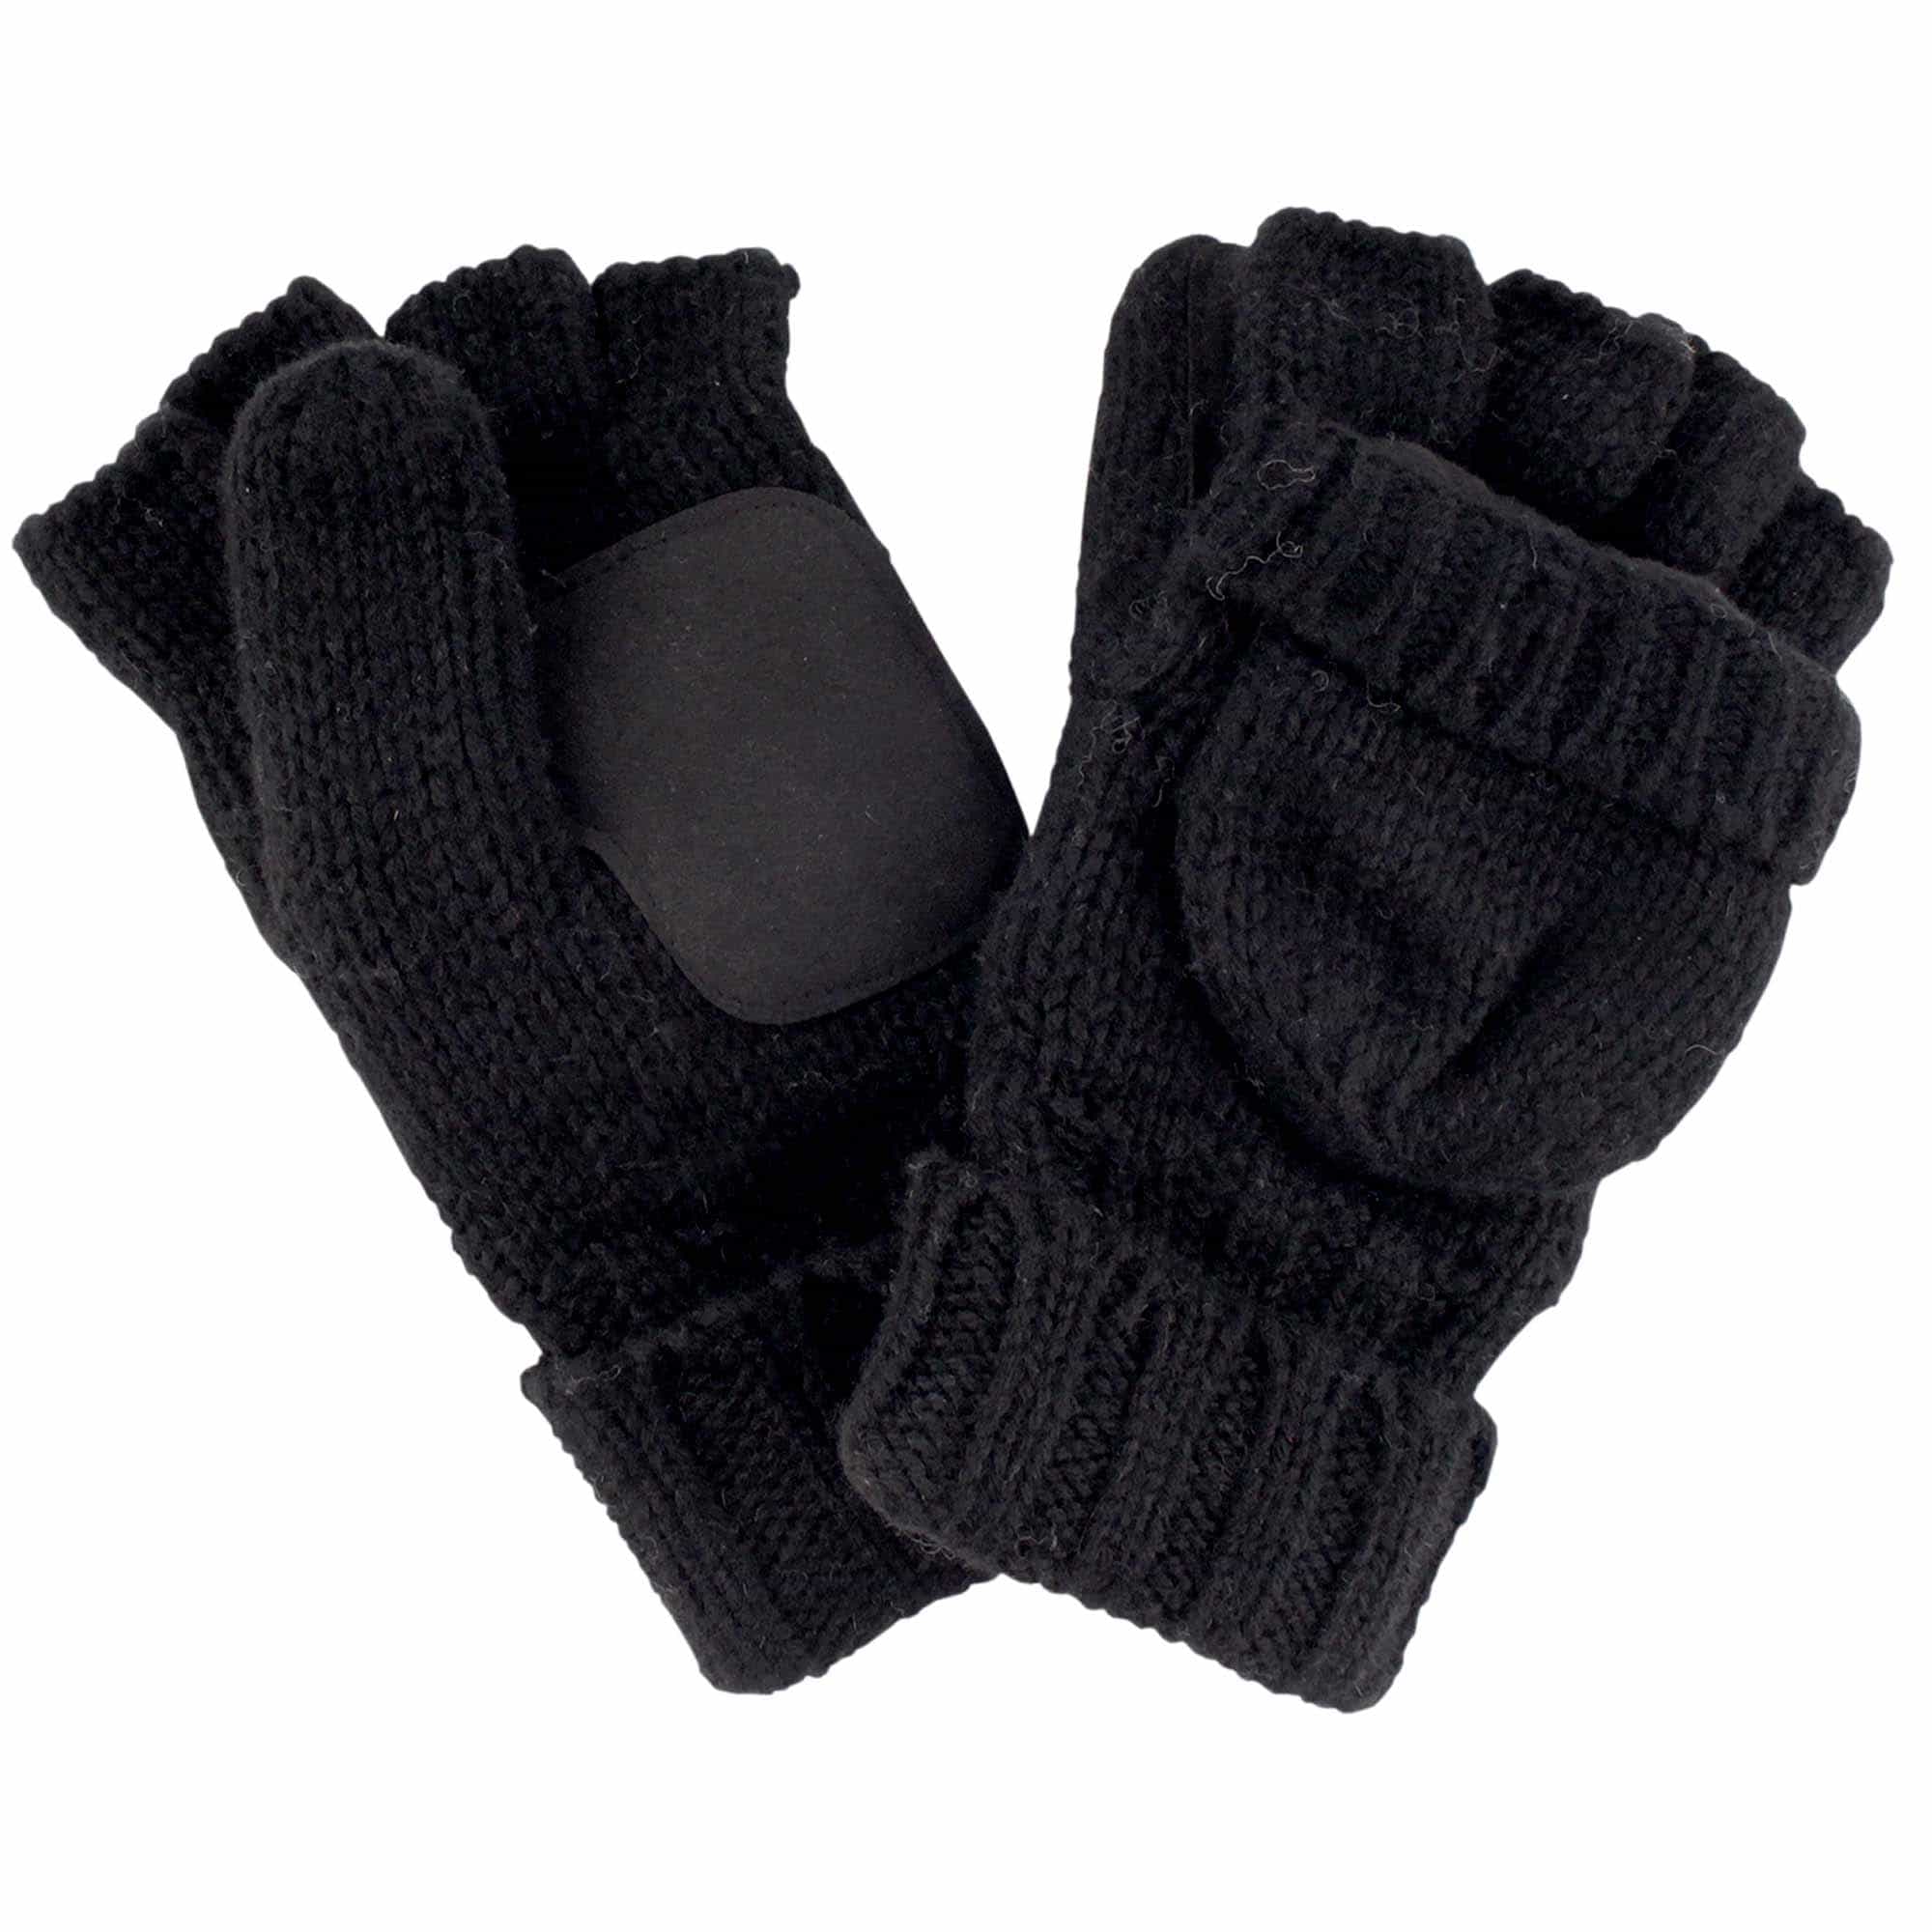 Knitted Winter Convertible Half Fingerless Glove Mittens Combo